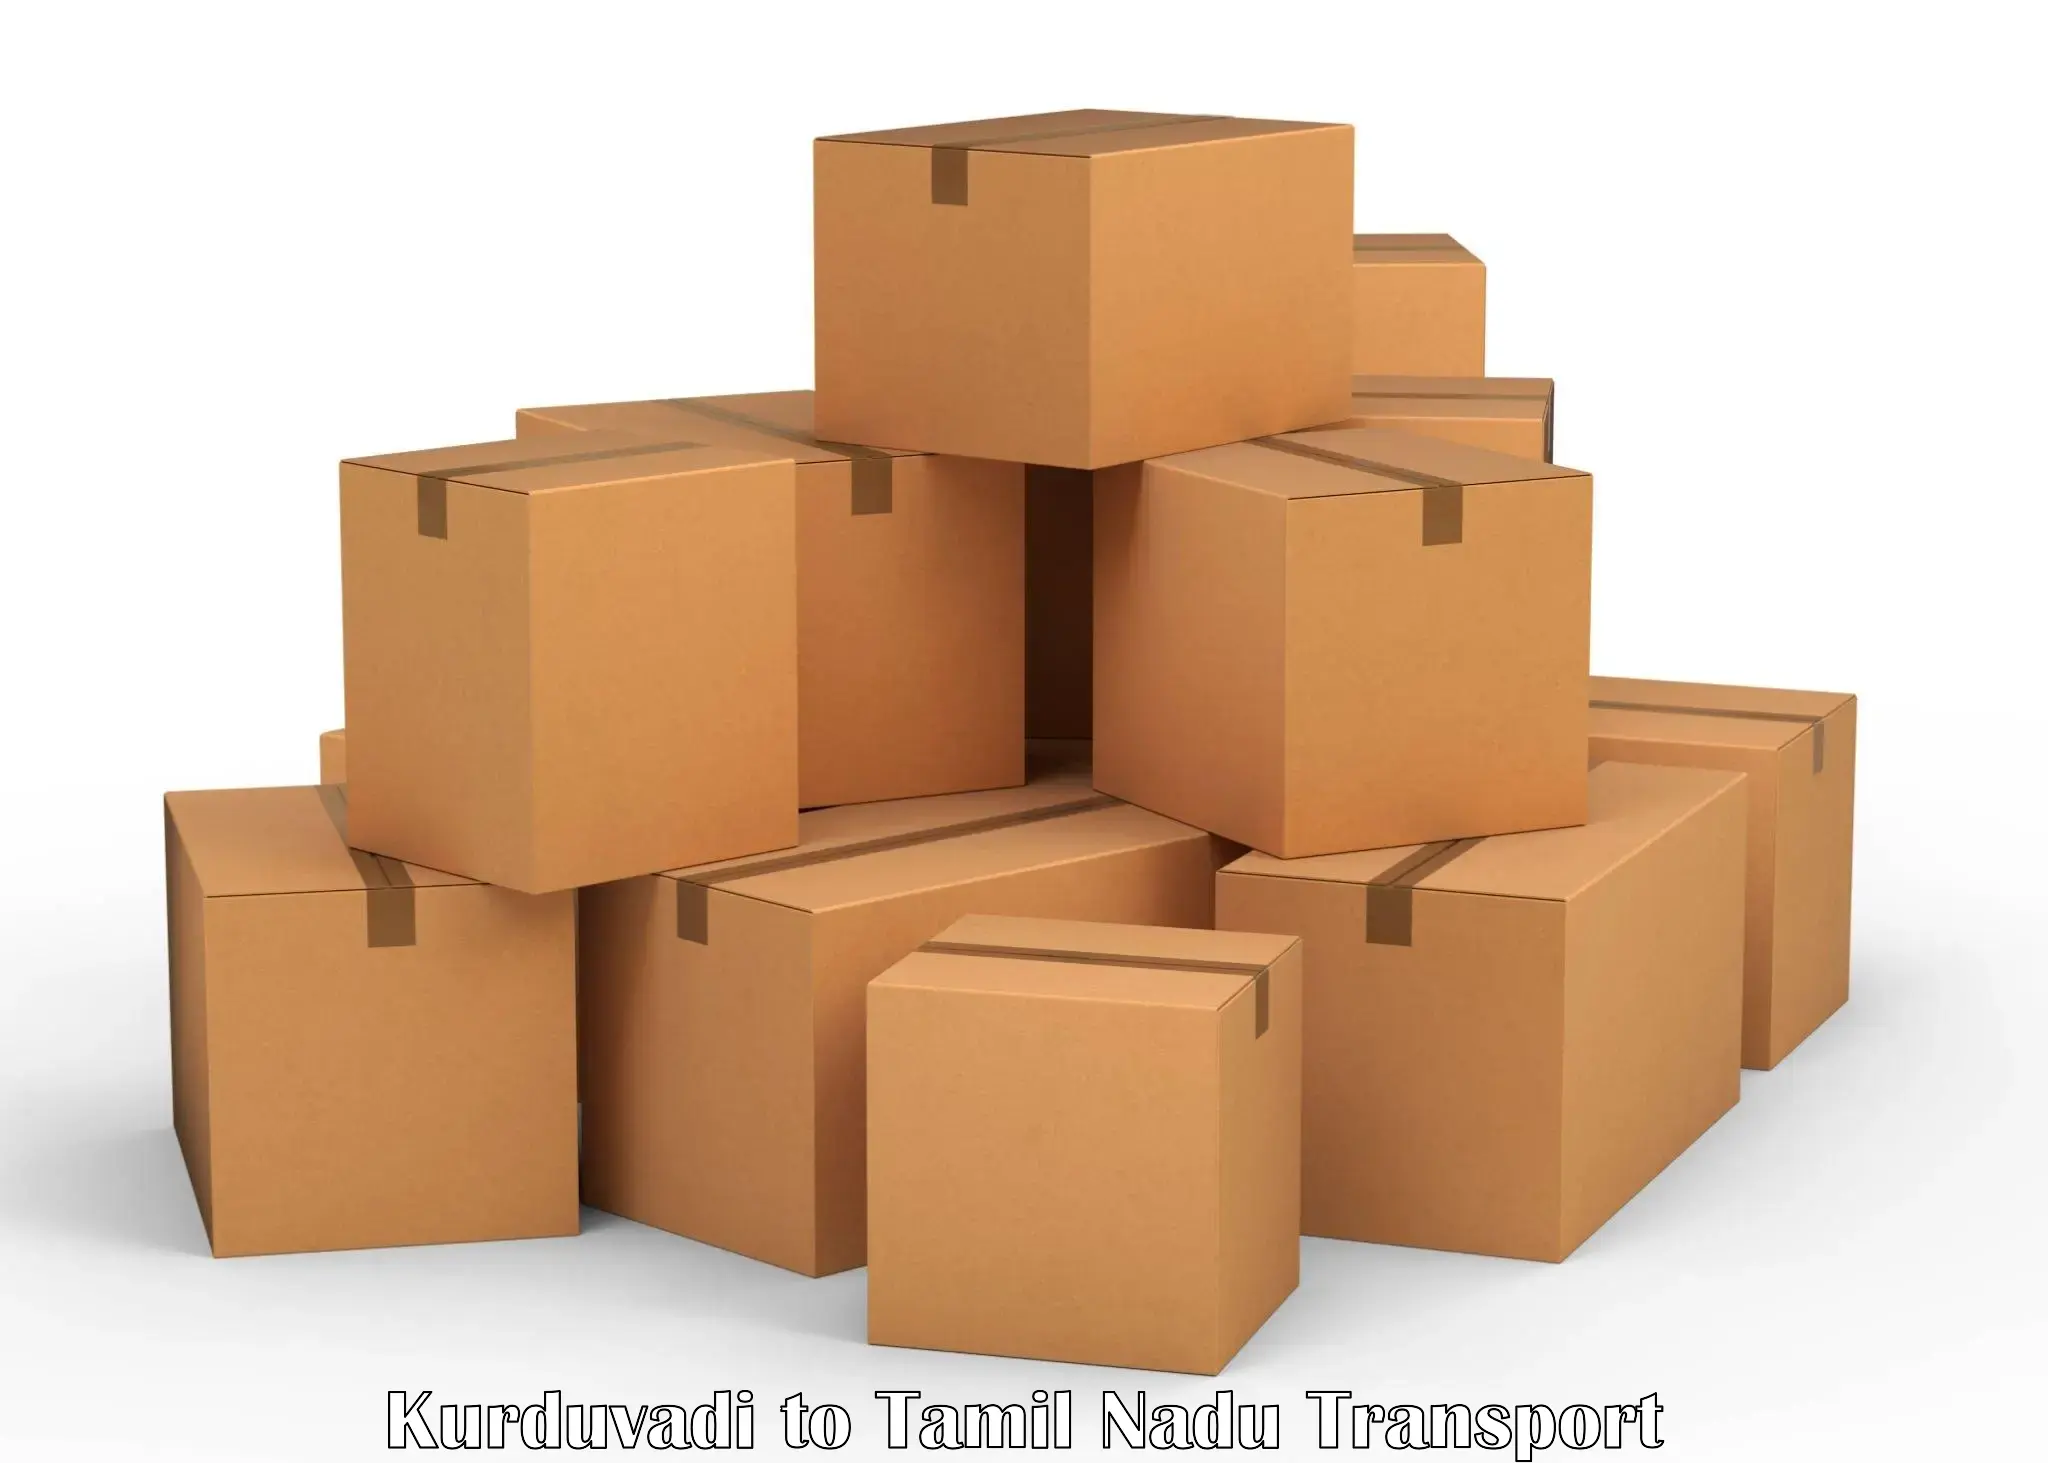 Container transport service Kurduvadi to Melur